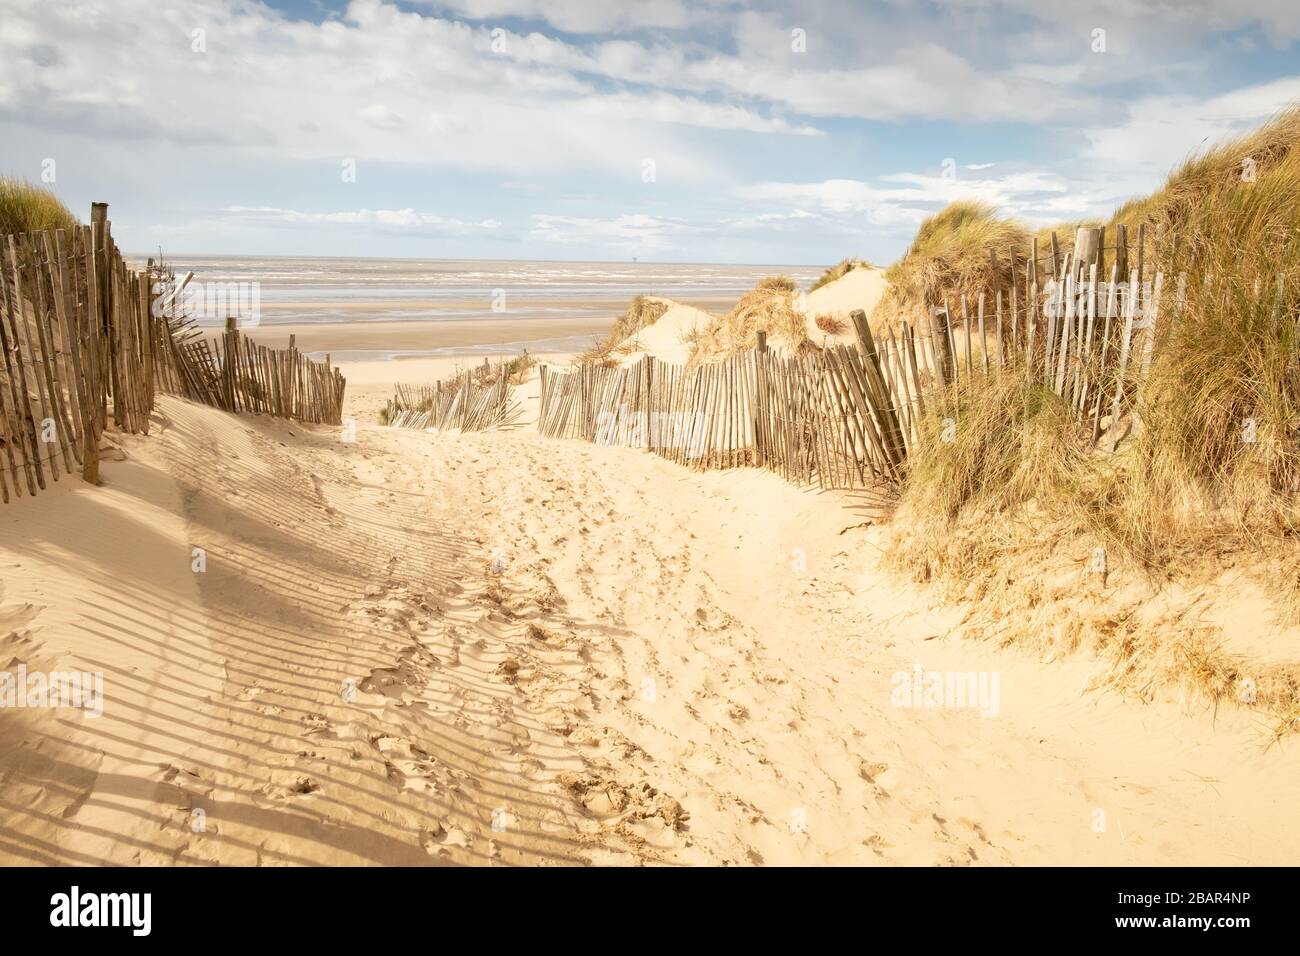 Chemin de sable avec clôtures en bois à grande plage et mer vides, Formby, Angleterre, Royaume-Uni Banque D'Images